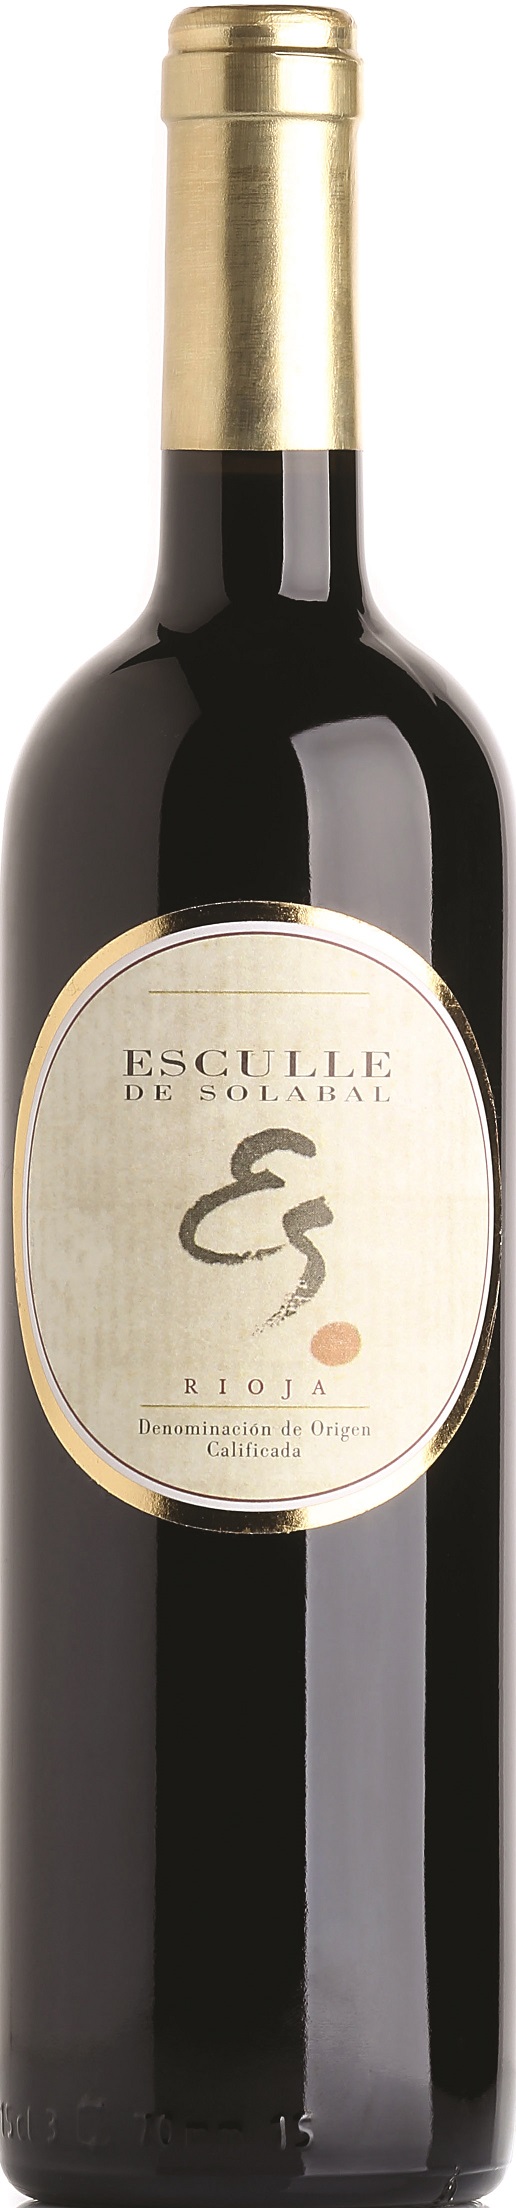 Bild von der Weinflasche Esculle de Solabal